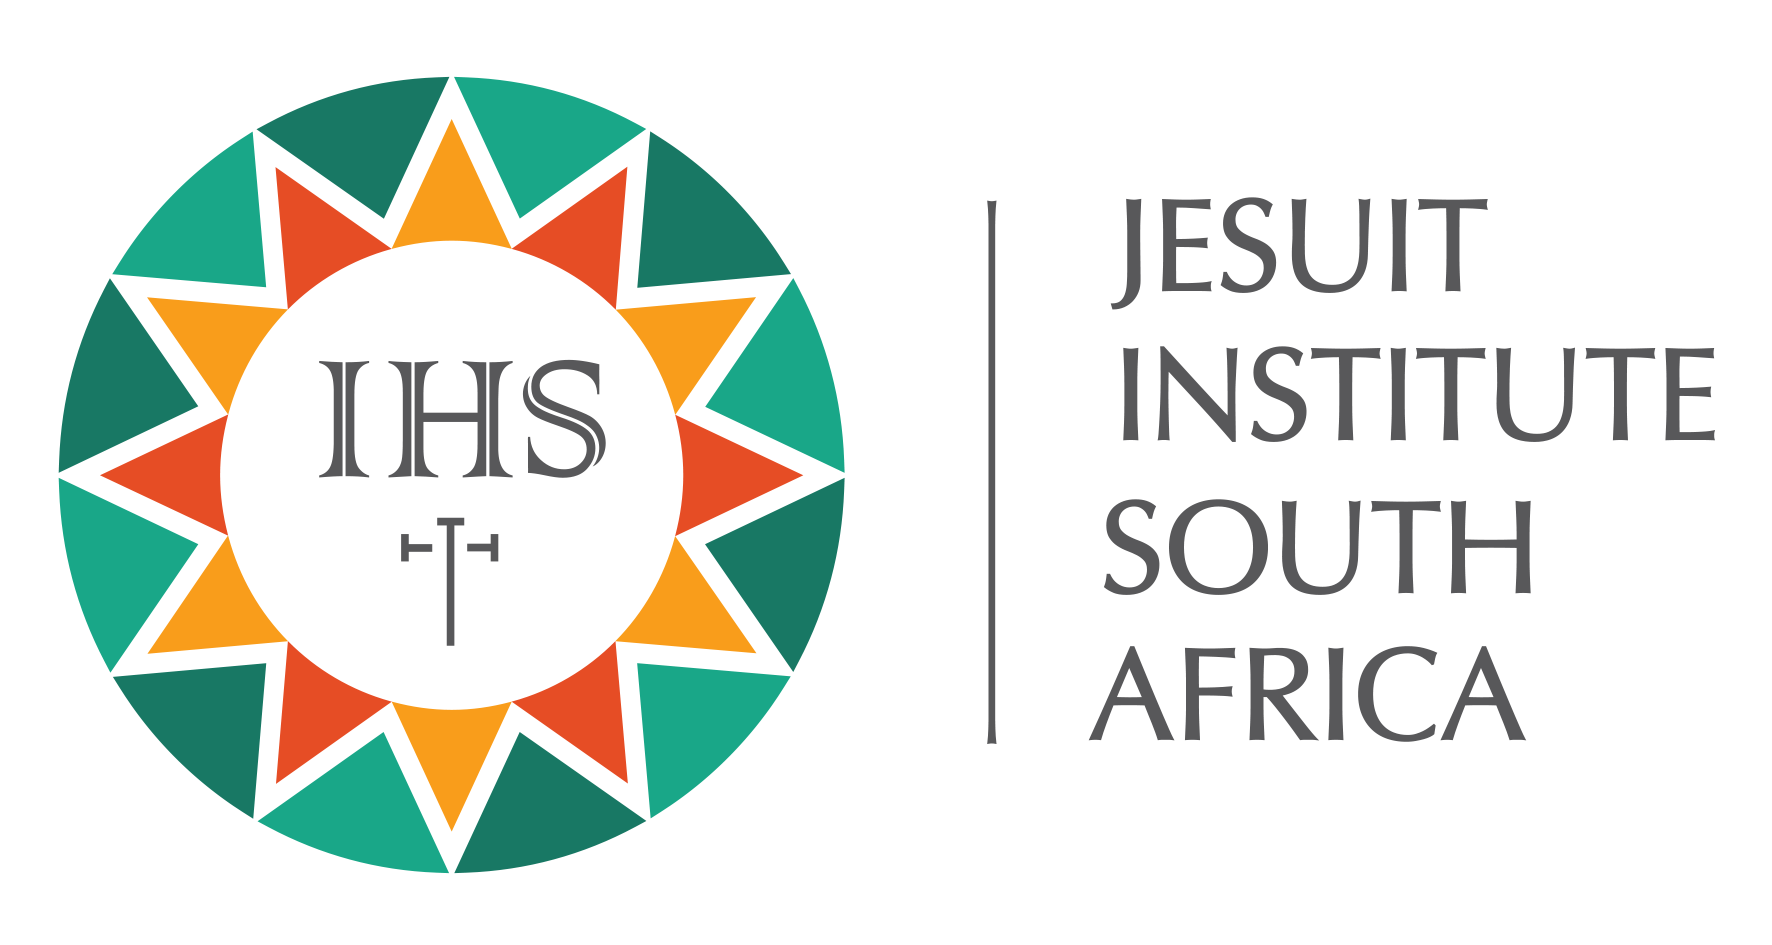 Jesuit Institute South Africa